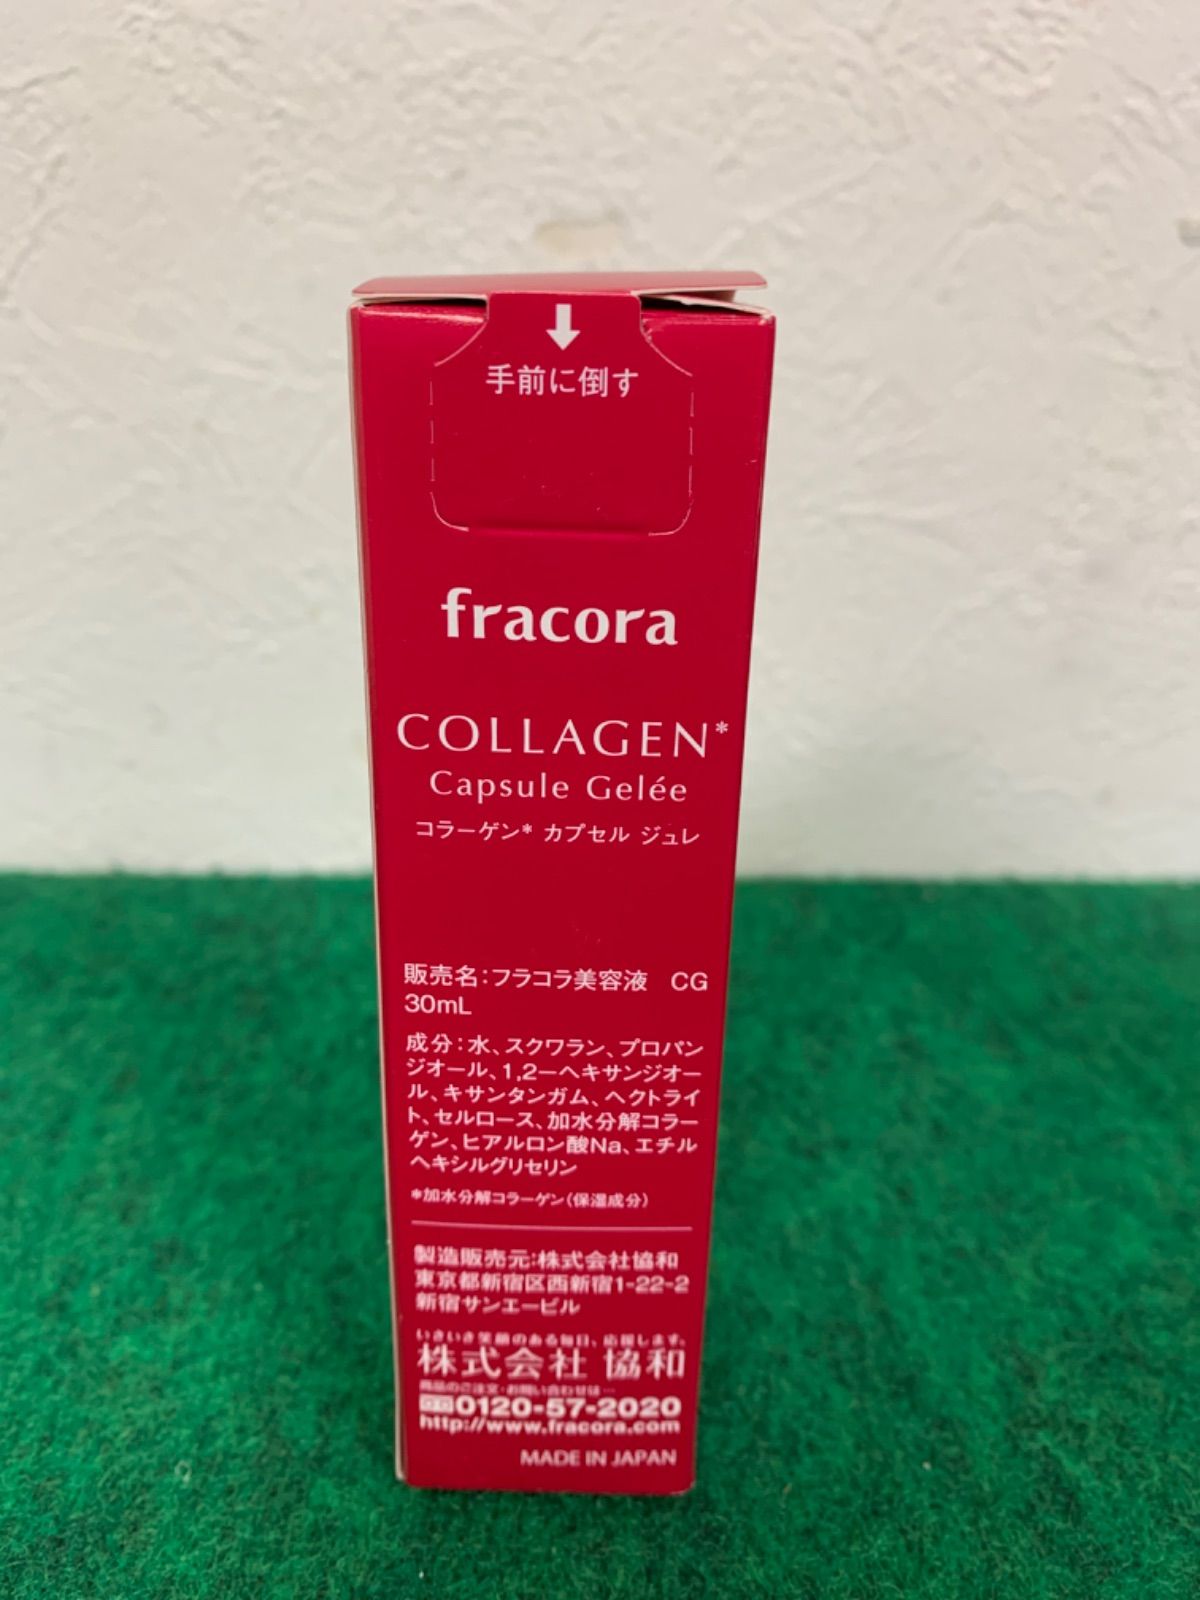 フラコラ美容液CG 30mL(コラーゲンカプセルジュレ) - 基礎化粧品